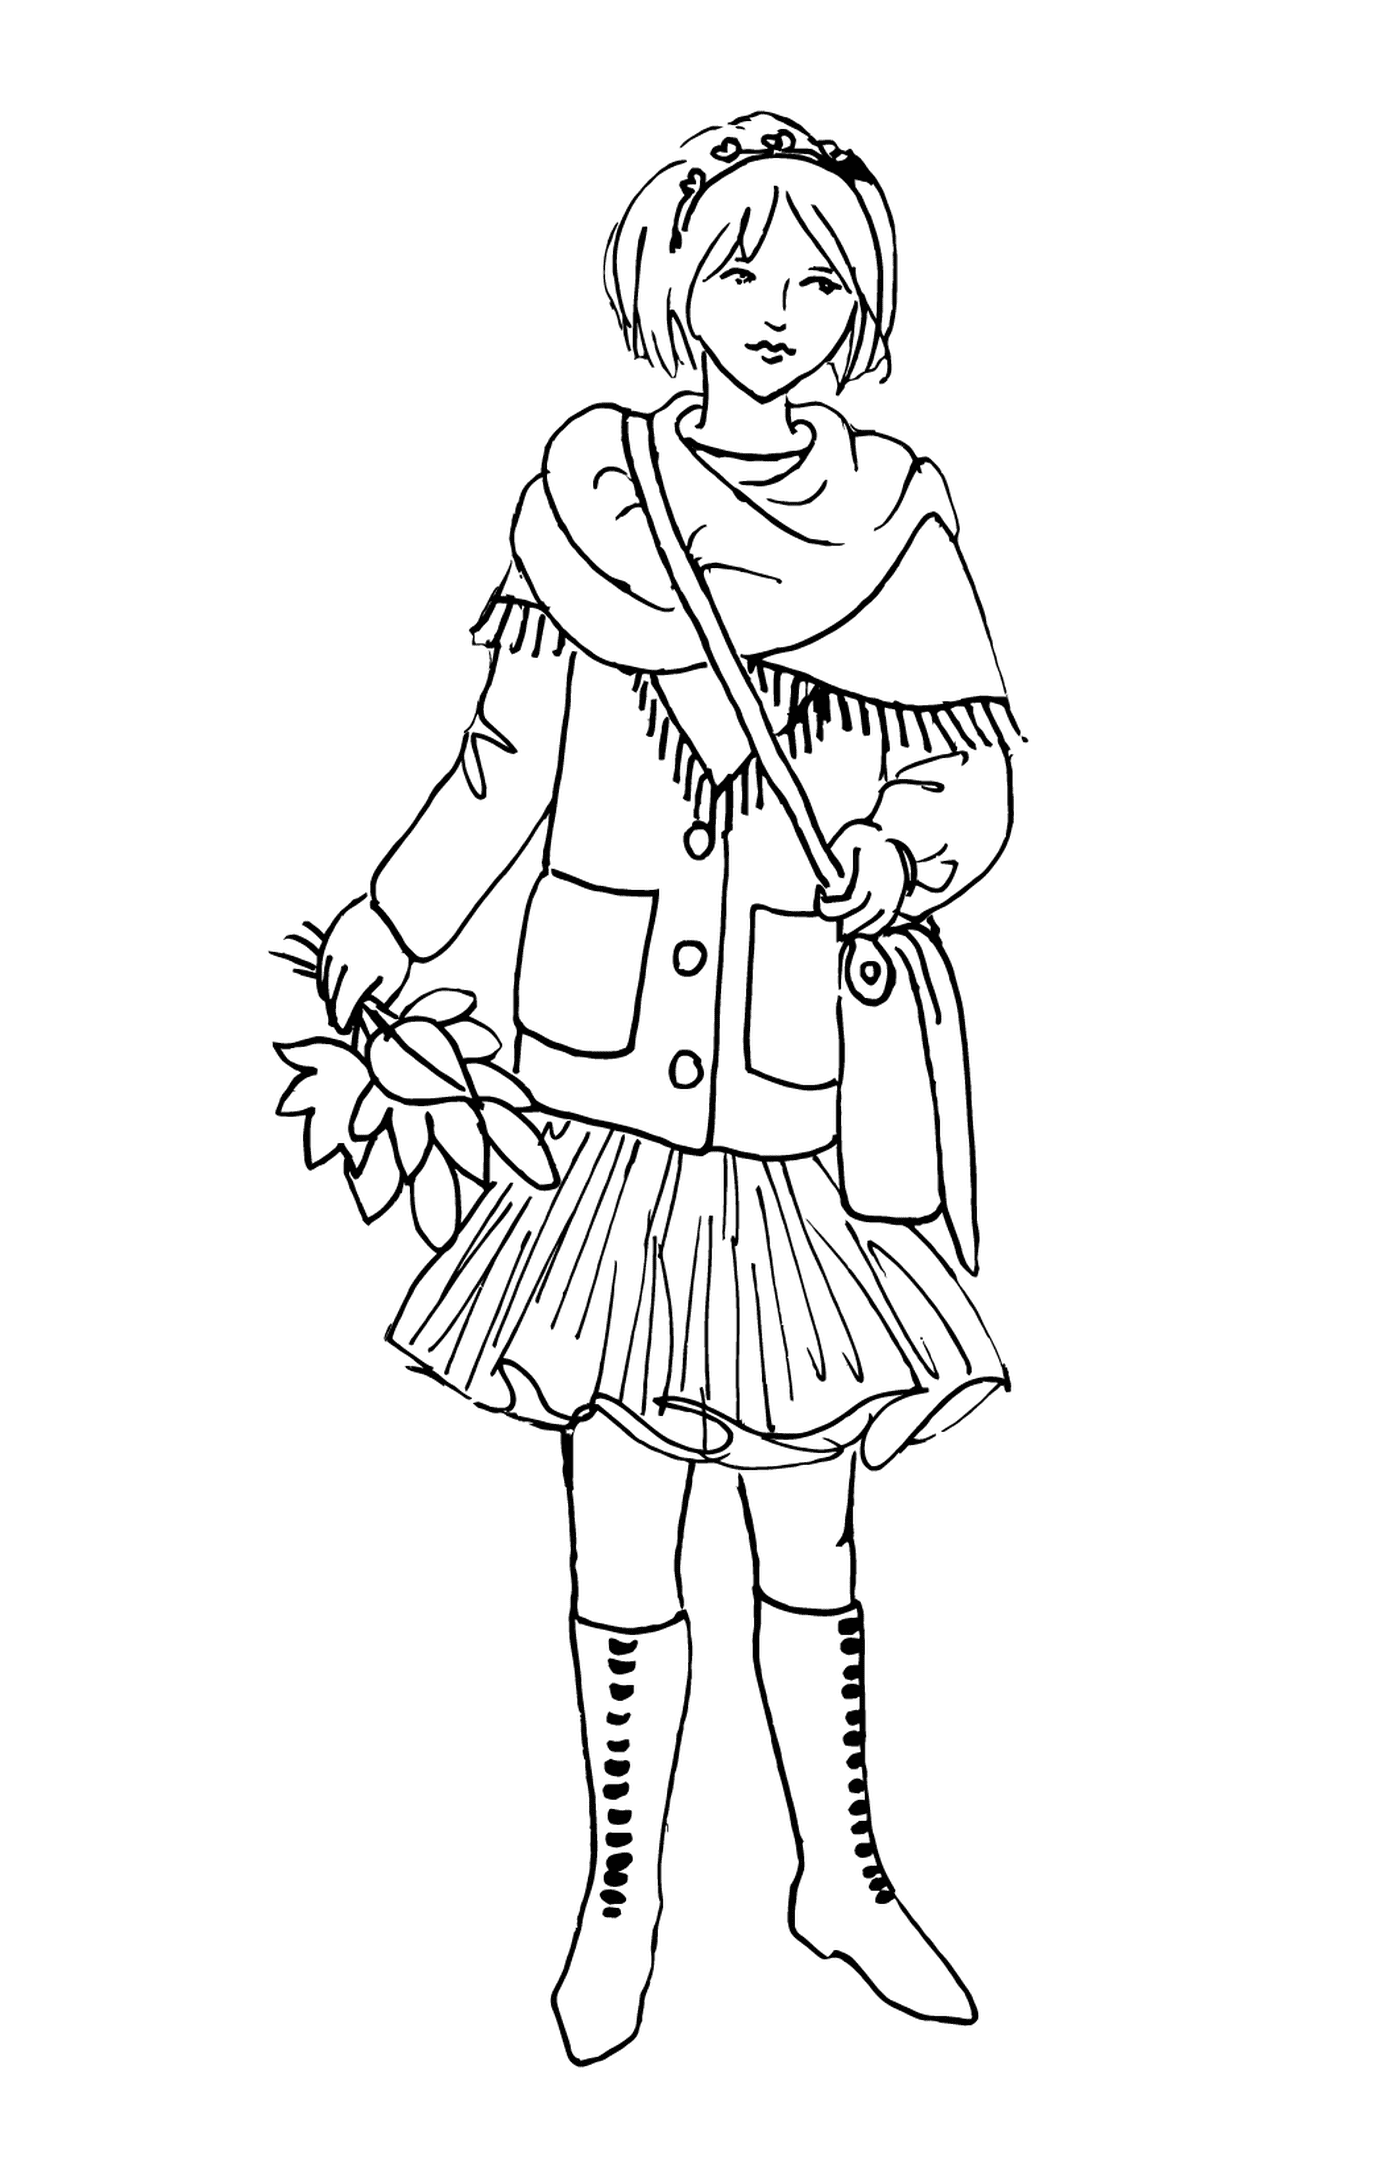  Uma menina em roupas de inverno 